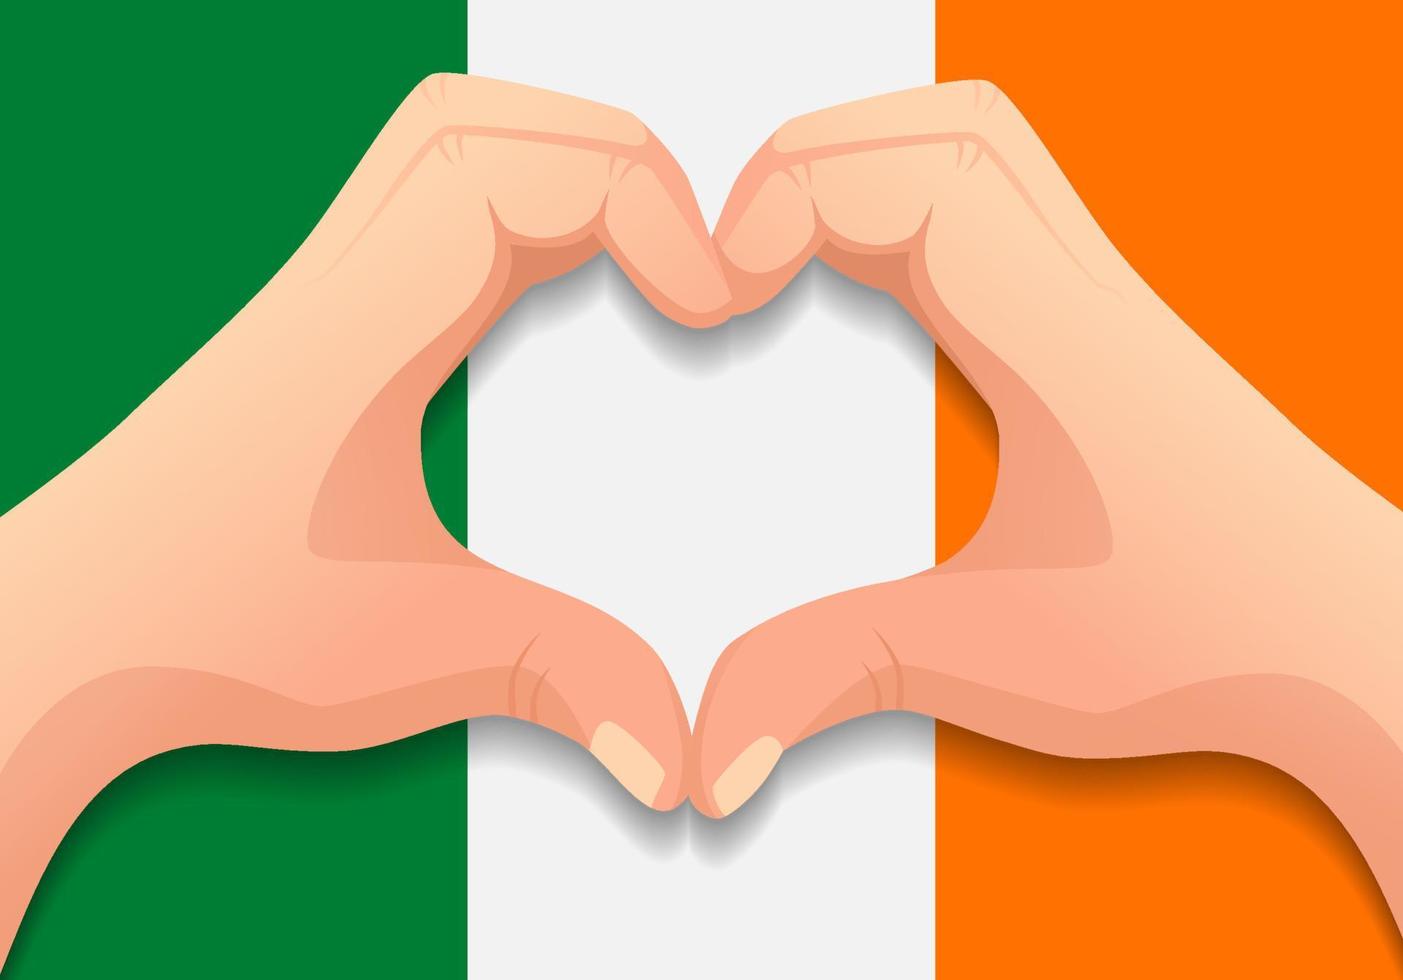 Ireland flag and hand heart shape vector